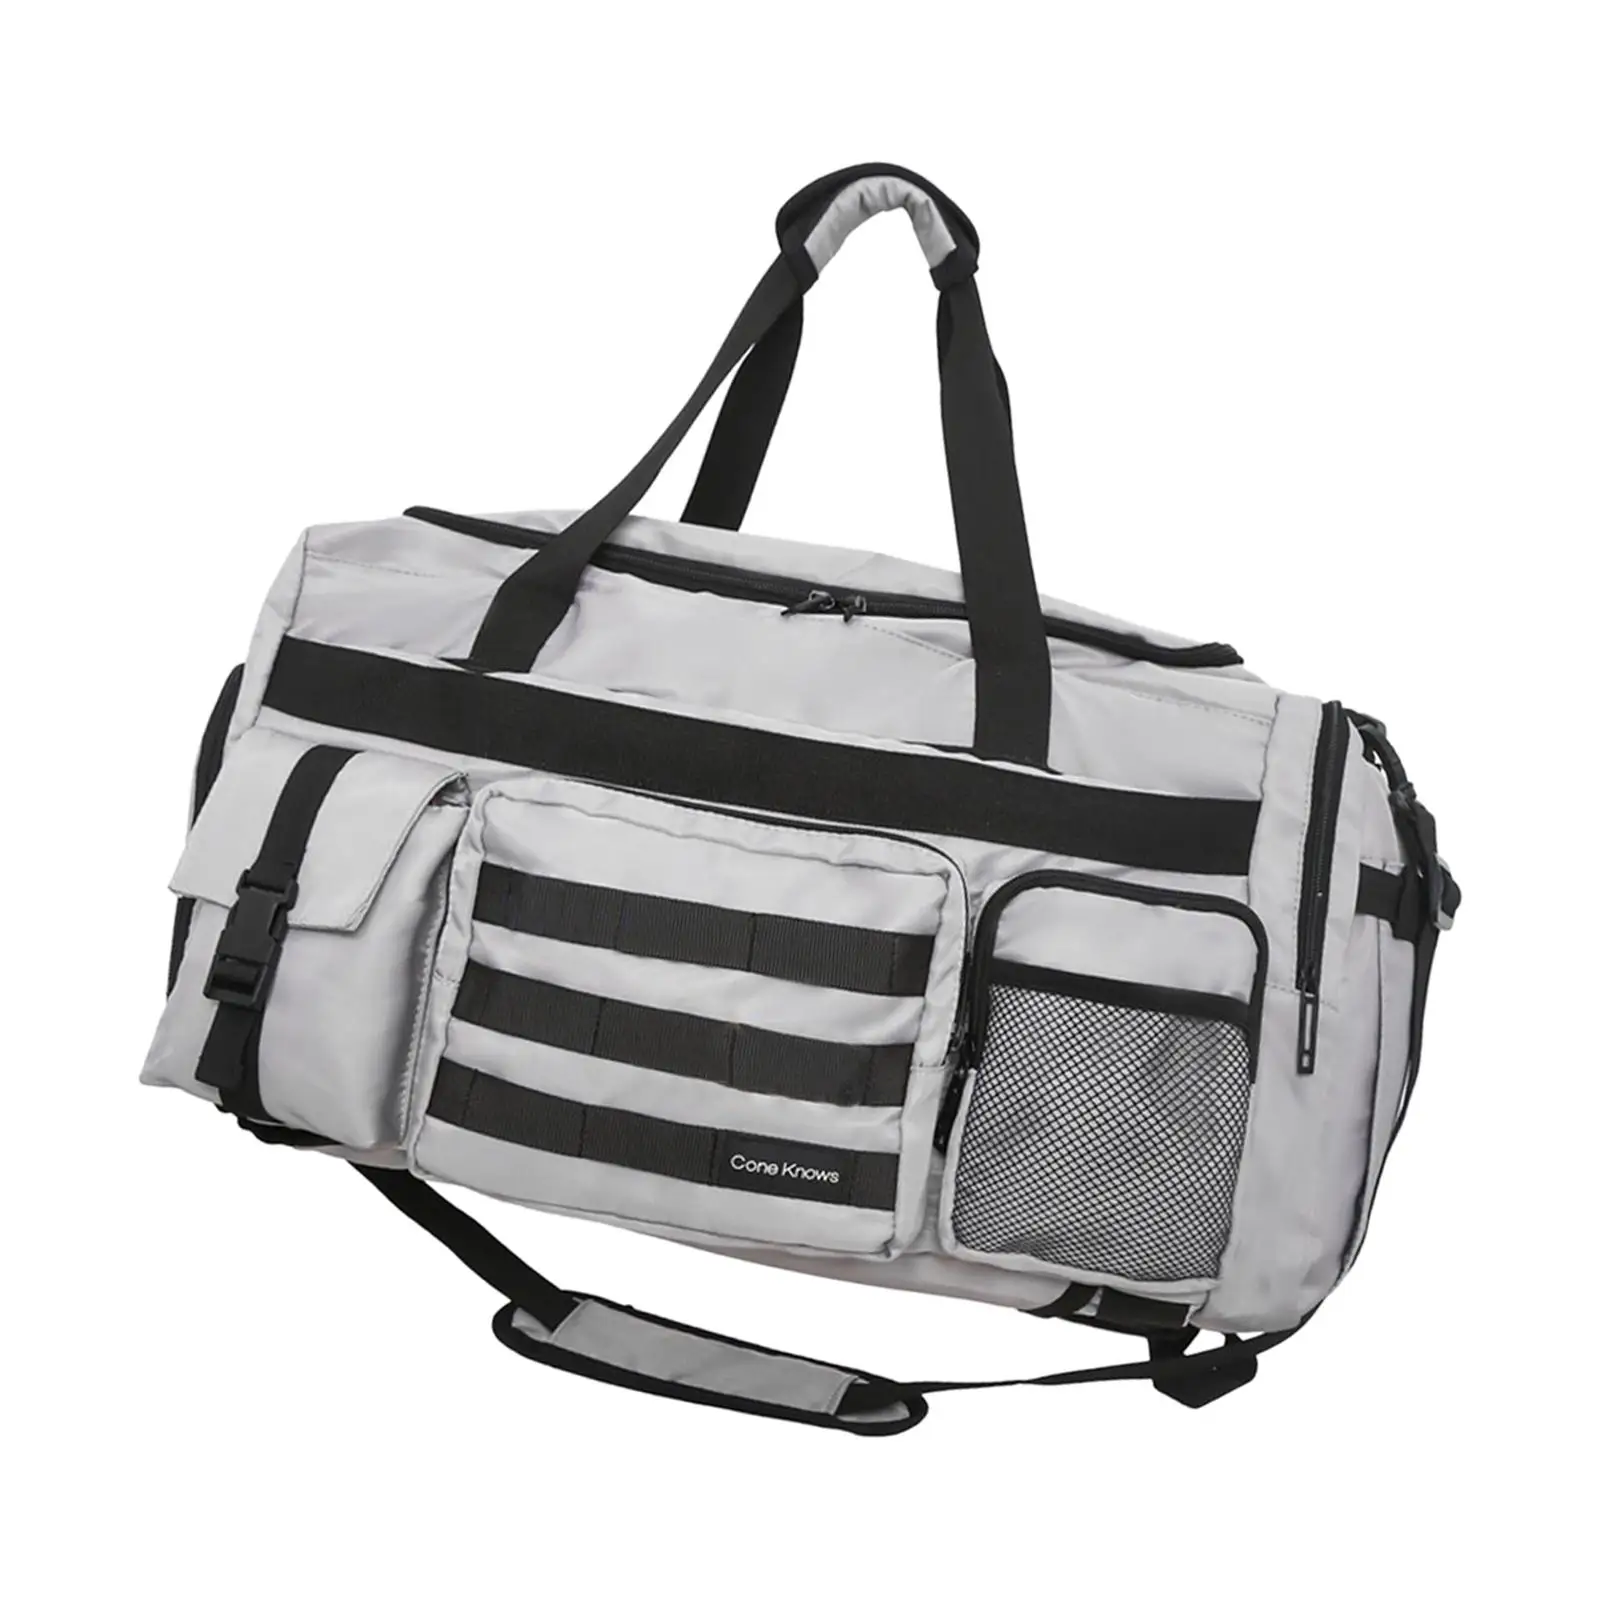 Travel Duffle Backpack Sports Gym Bag Weekender Bag Yoga Bag Apparel Portable Shoulder Bag for Fitness Weekend Exercise Camping